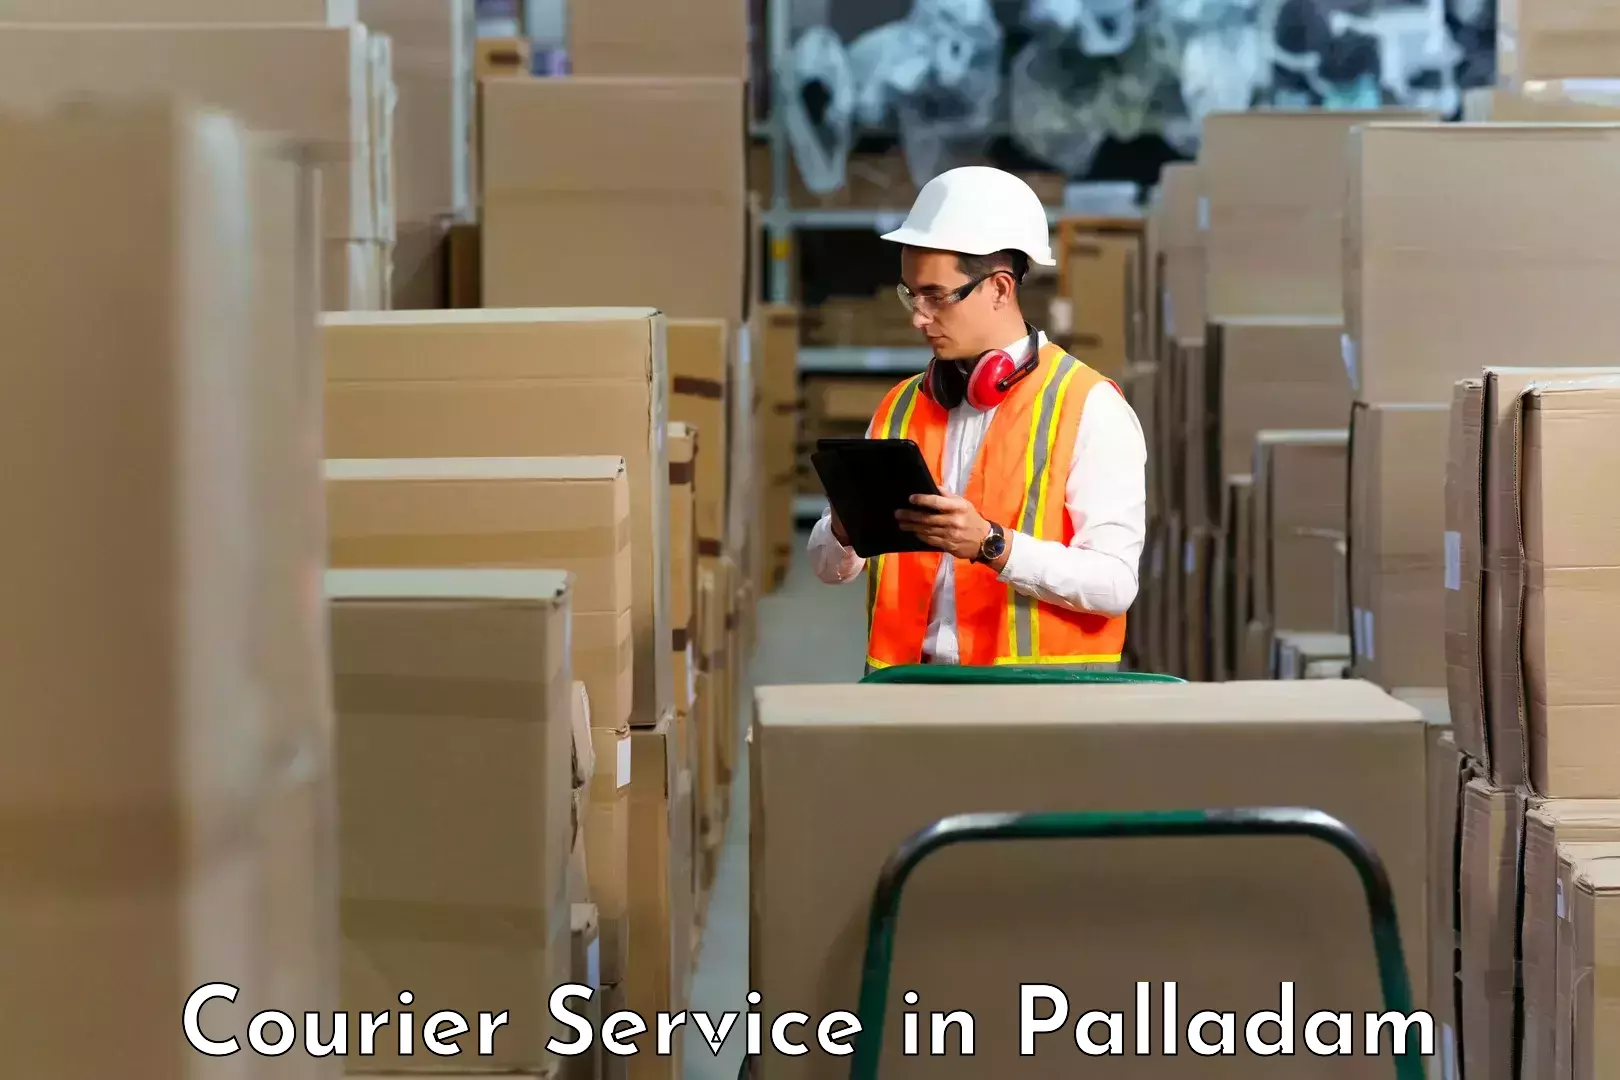 Customer-focused courier in Palladam